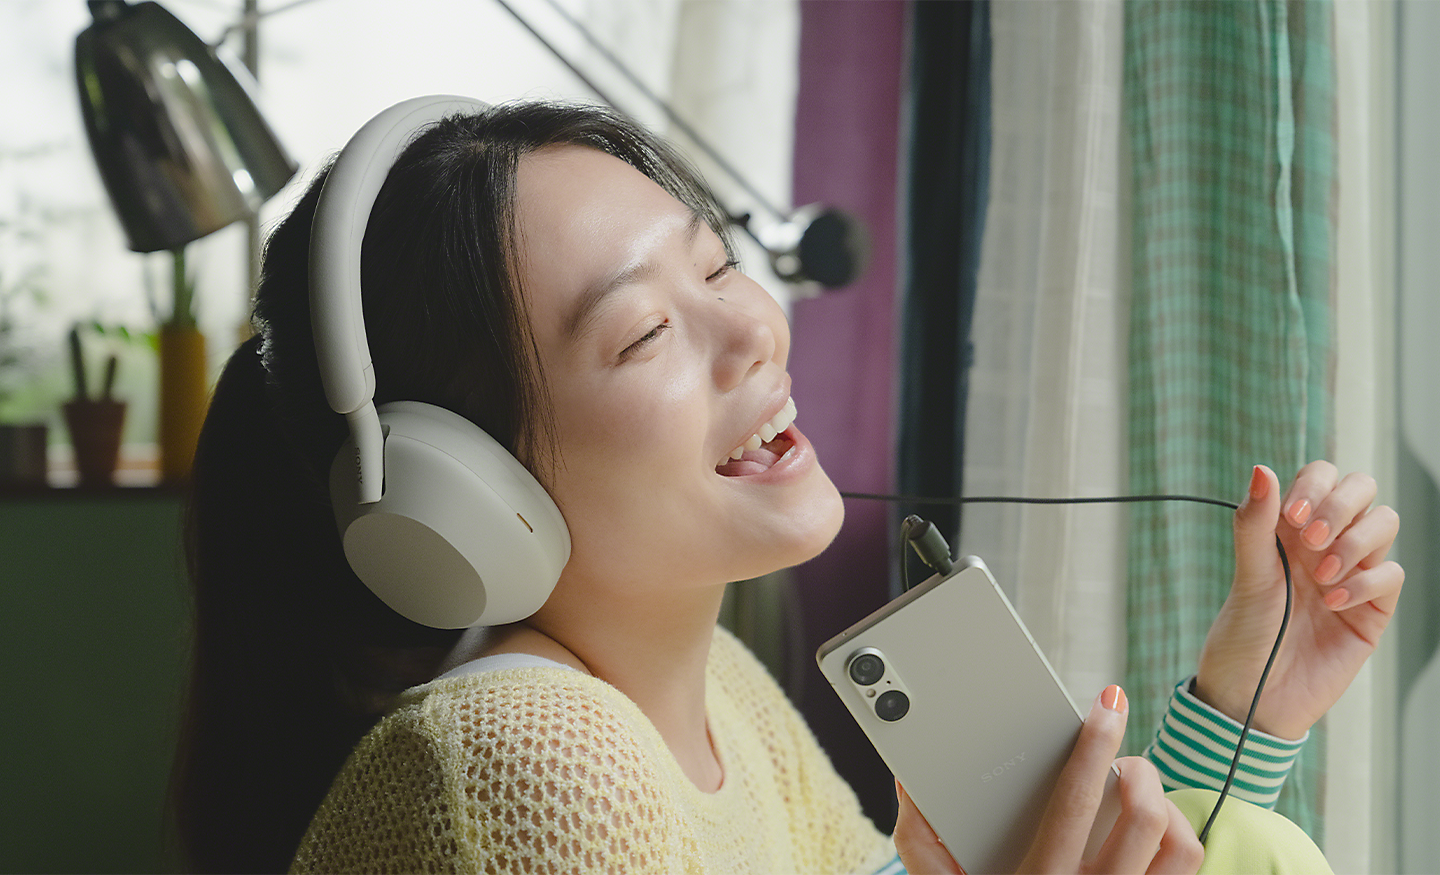 Kép egy személyről, aki Xperia 5 V telefonon hallgat zenét fehér fejhallgatóval, és énekel a zenére